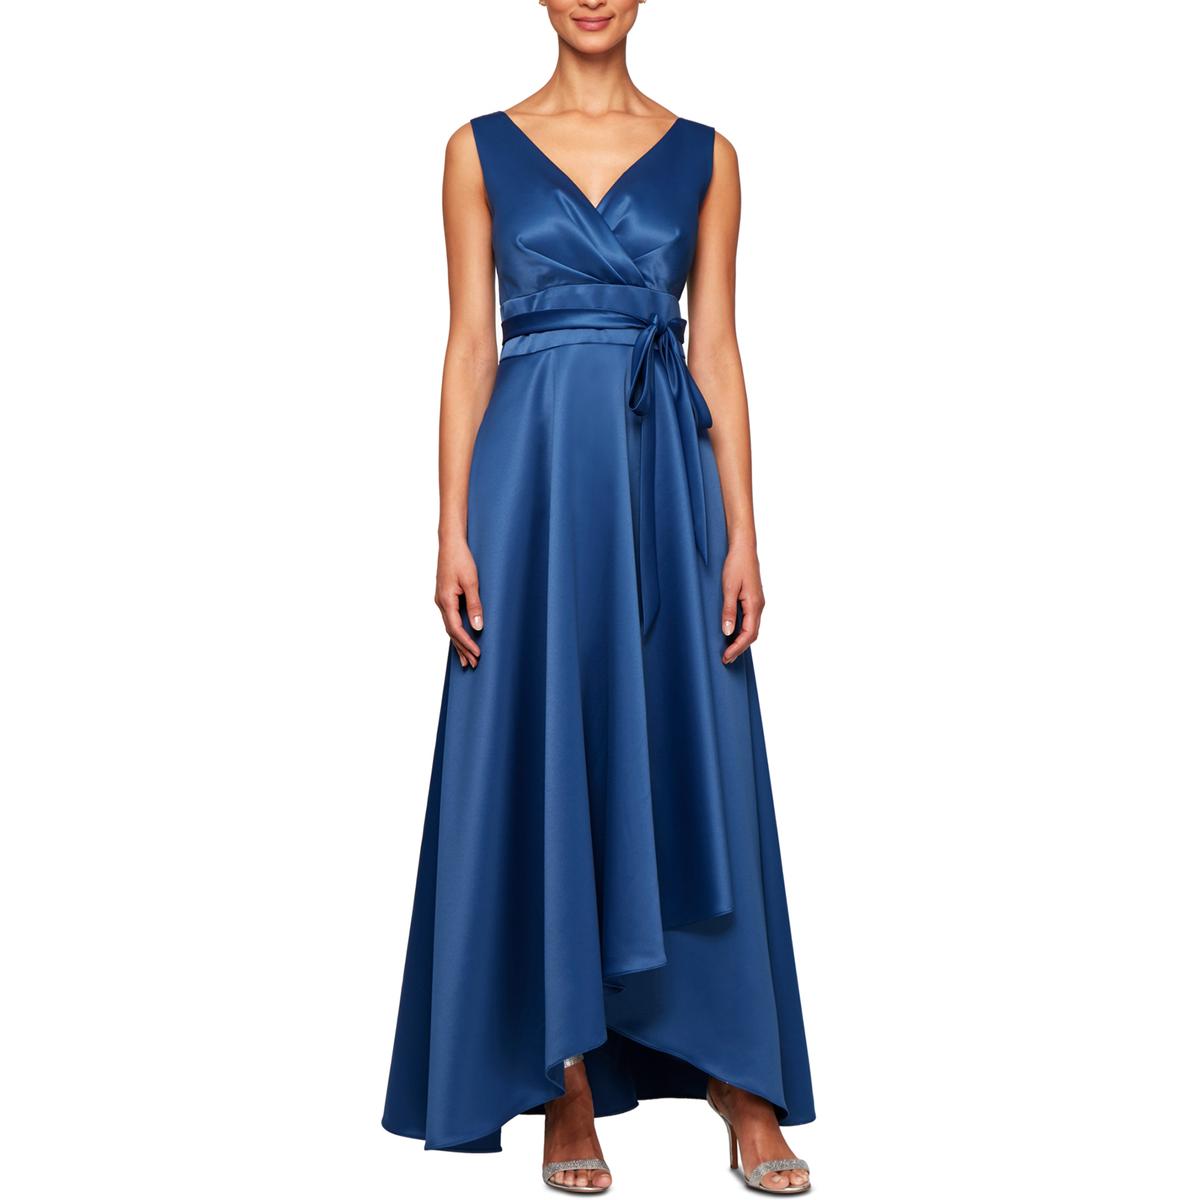 Alex Evenings Womens Blue Satin Sleeveless Evening Dress Gown 16 BHFO ...